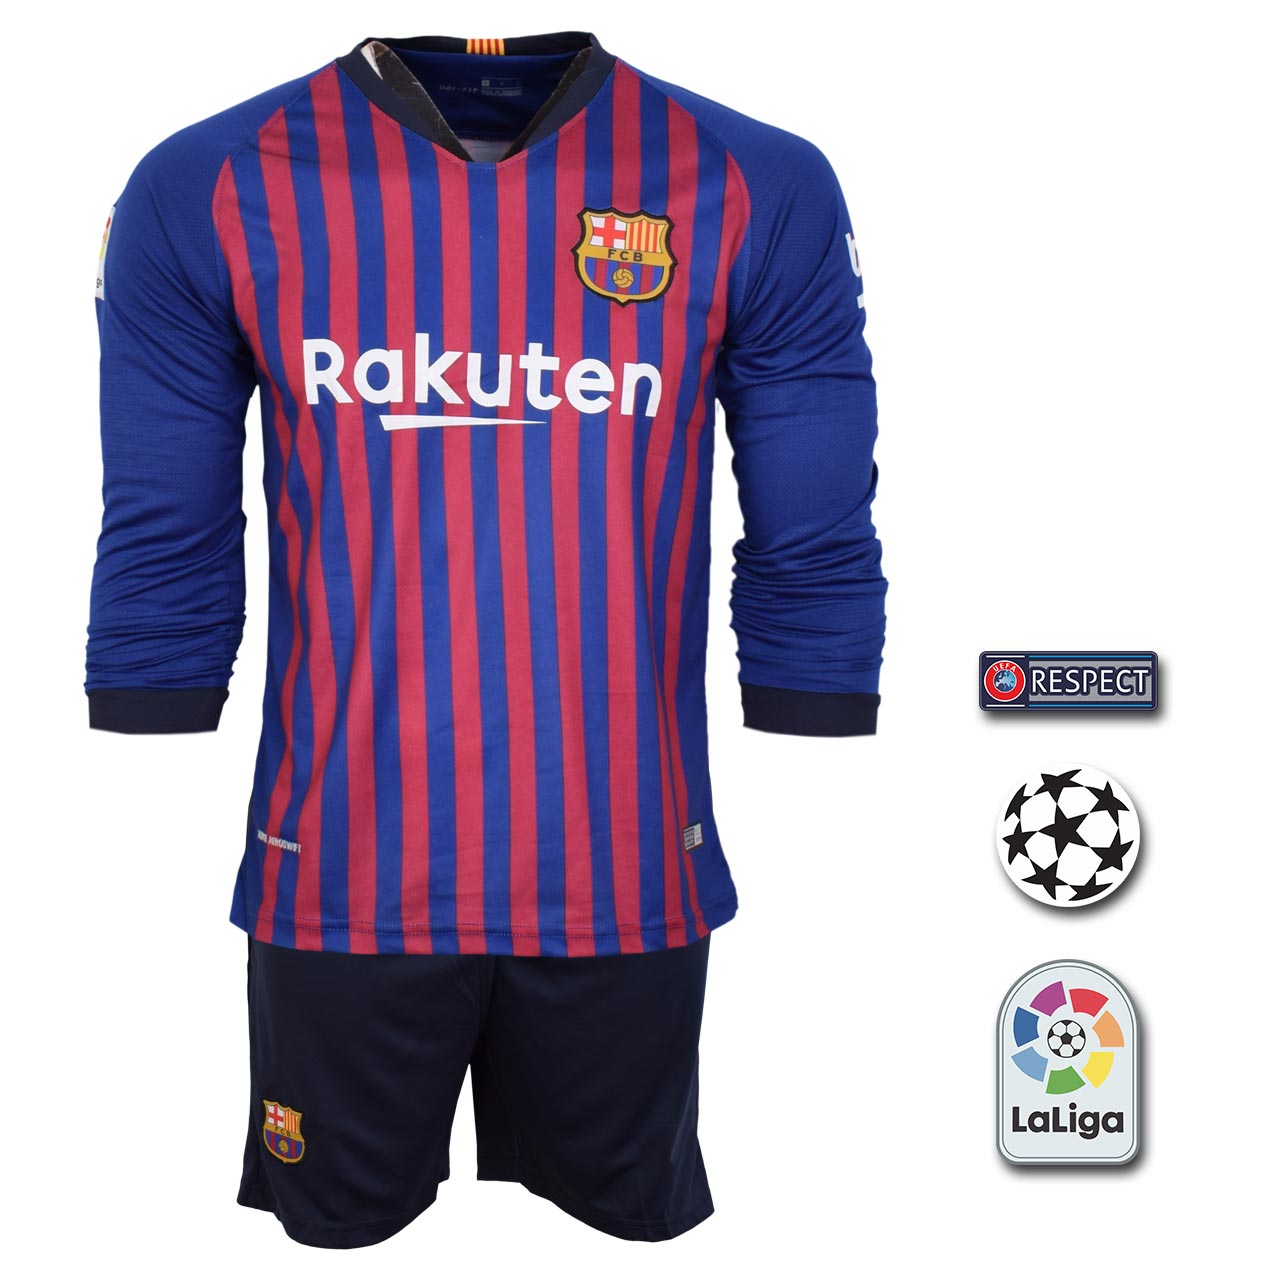 پیراهن و شورت ورزشی مردانه طرح بارسلونا مدل SL-home18/19 به همراه تگ                     غیر اصل